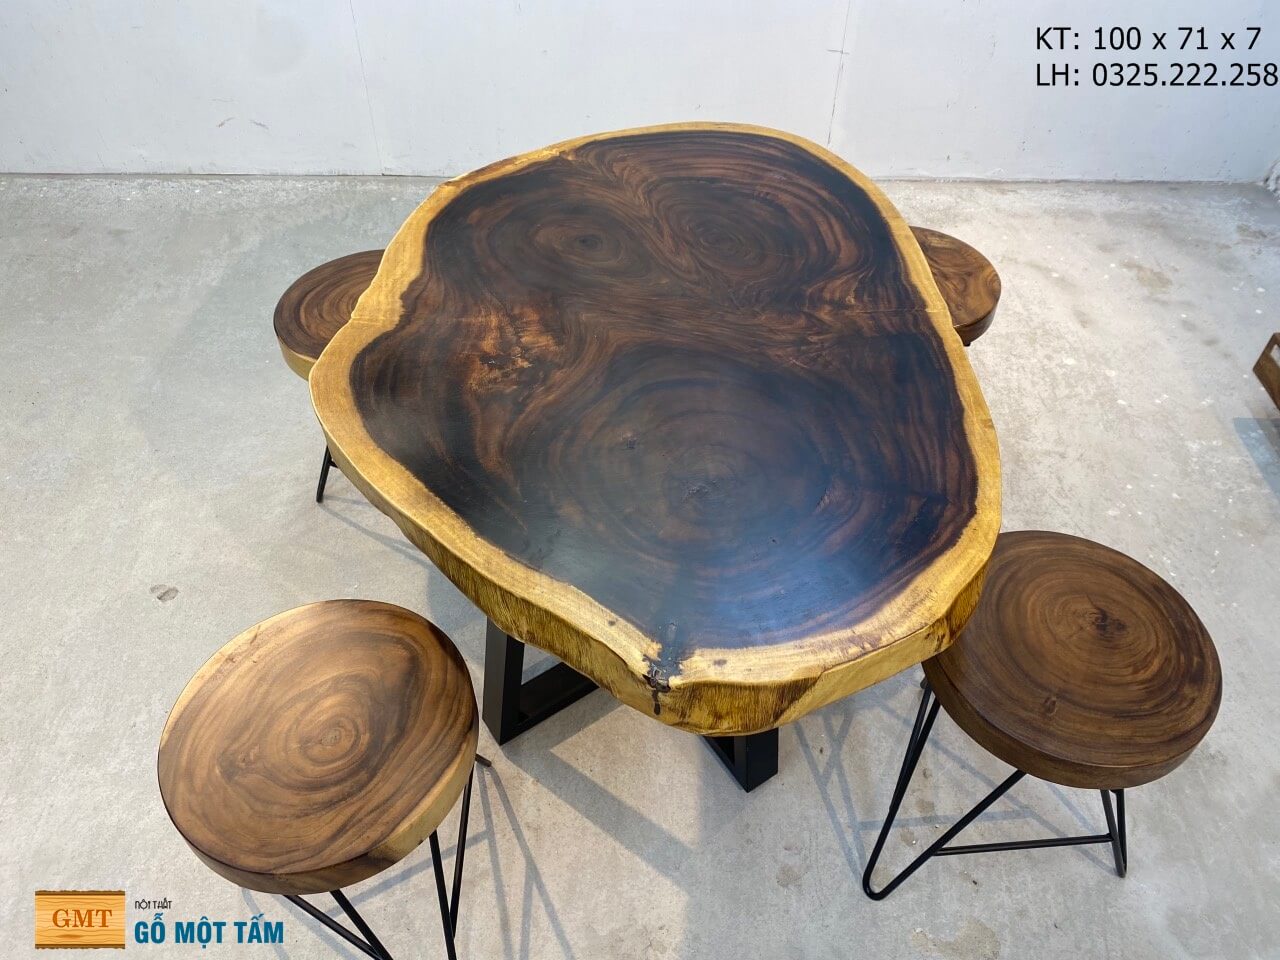 Khám phá bộ bàn ghế gỗ me tây nguyên tấm với thiết kế đầy tinh tế và nét hoang dã đặc trưng của gỗ me tây. Sự kết hợp hoàn hảo giữa chất liệu và thiết kế để tạo ra một bộ sản phẩm gỗ đẳng cấp và độc đáo.